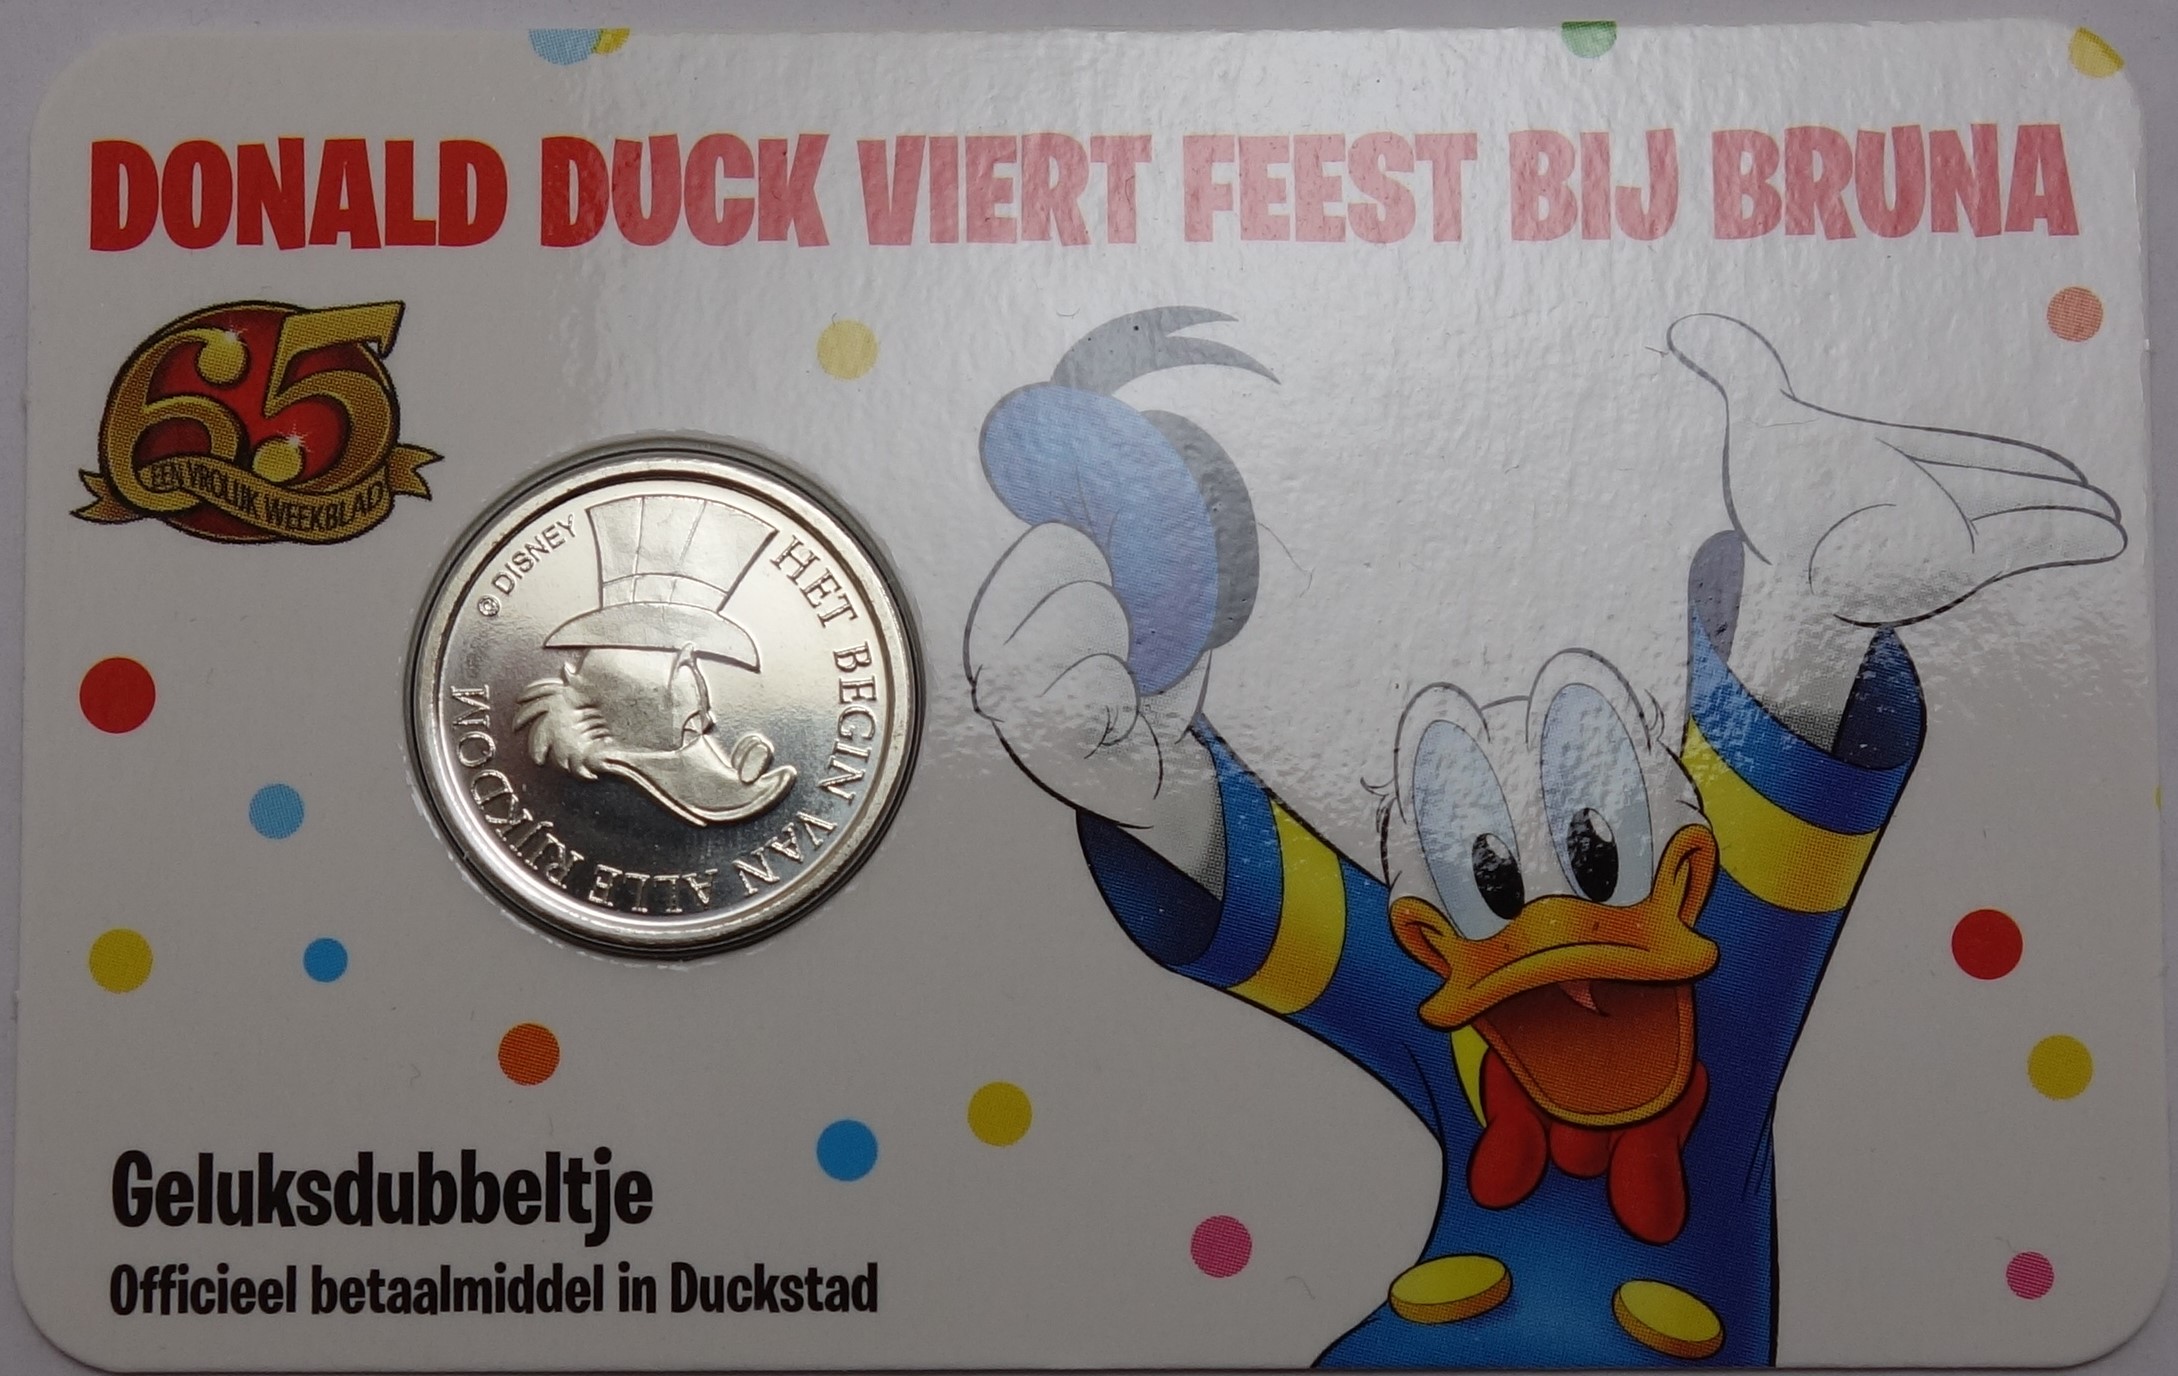 65 jaar Donald Duck Geluksdubbeltje 2017 coincard